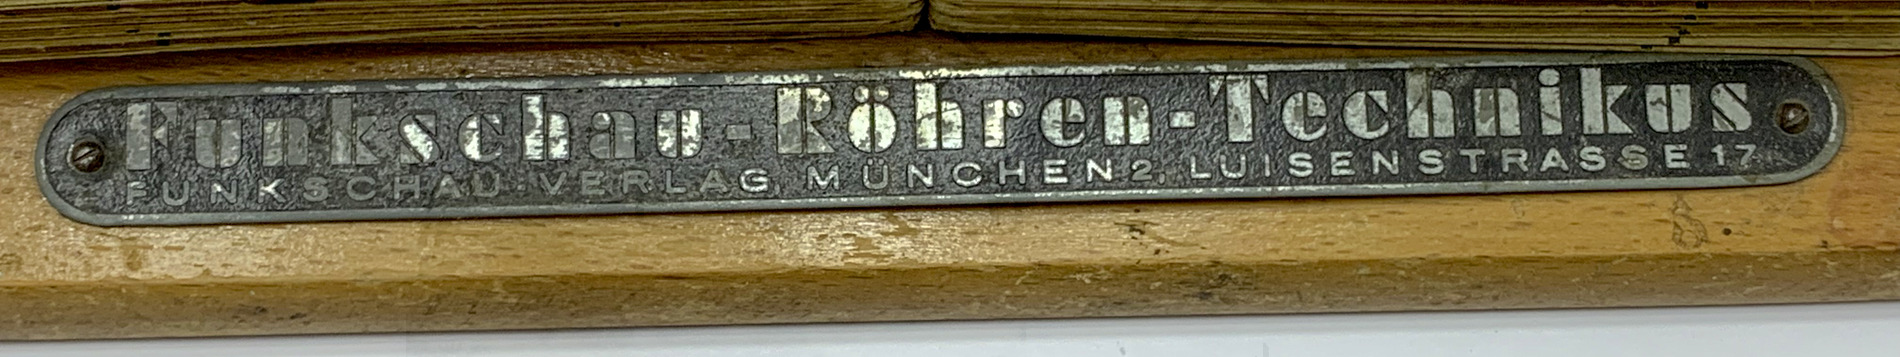 Funkschau Röhren Technikus (1943) - Metallplakette mit der Verlagsanschrift